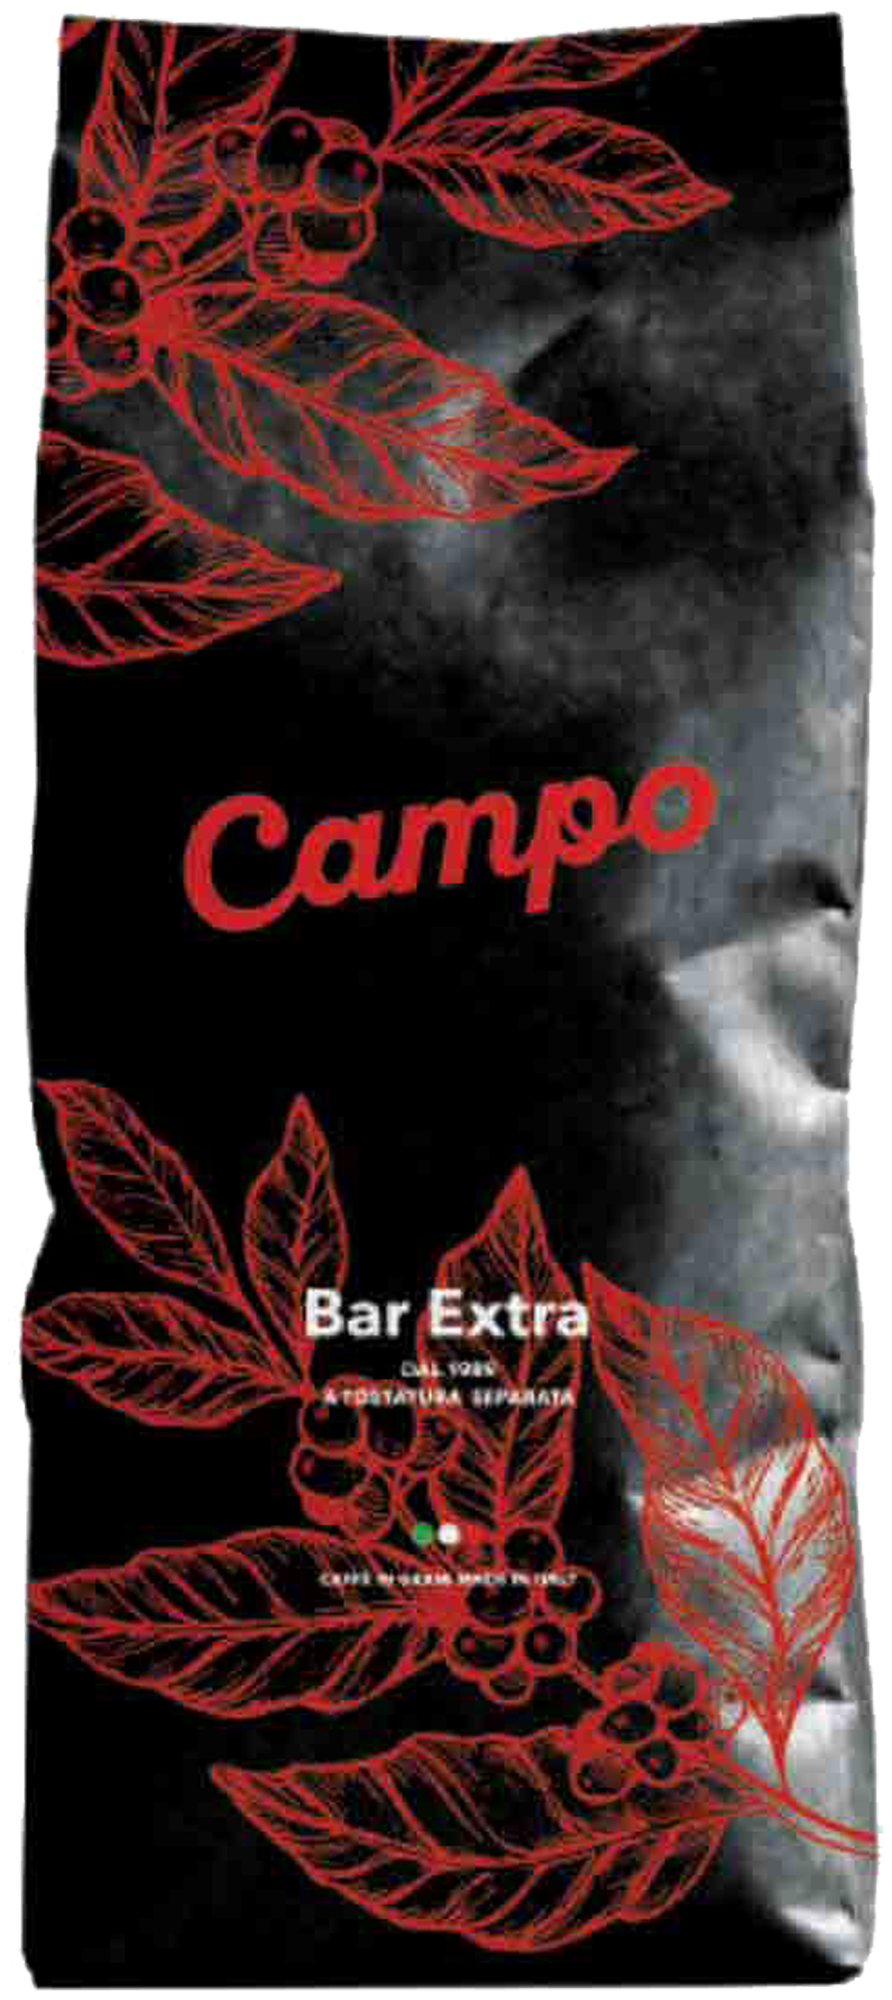 Кофе эспрессо в зернах CAMPO BAR EXTRA/ 20% арабика 80% робуста/ 1000gr